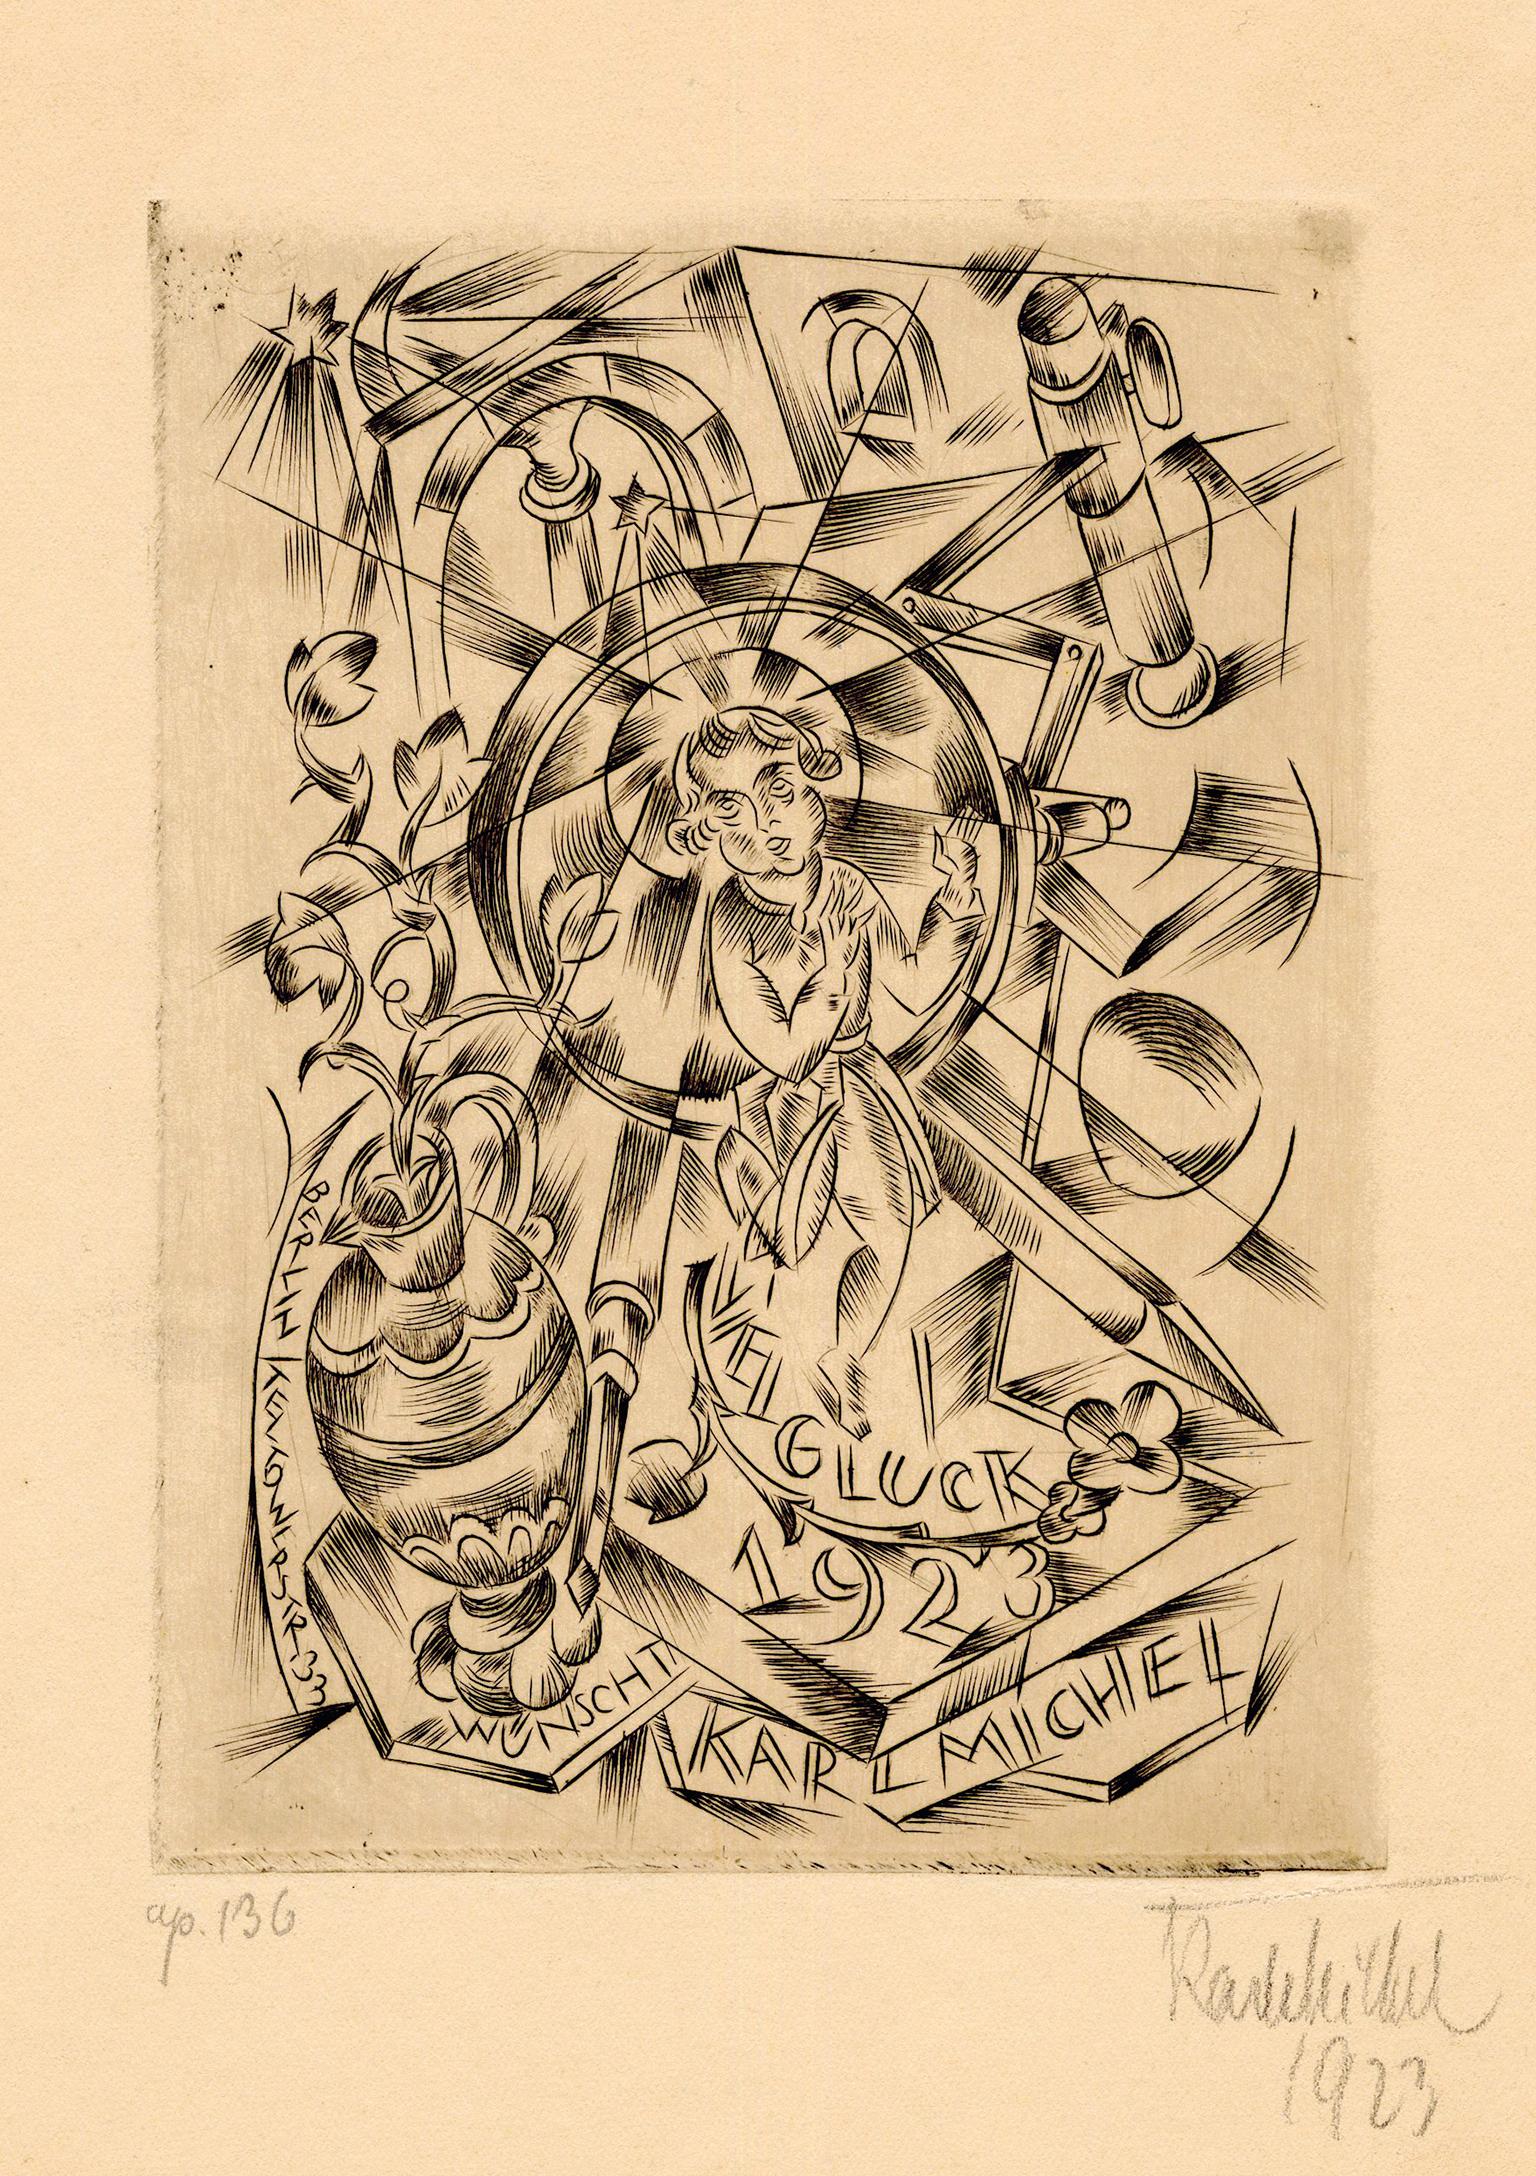 Karl Michel Figurative Print - 'Viel Gluck 1923'  — New Year's Greeting - 1920s German Expressionism